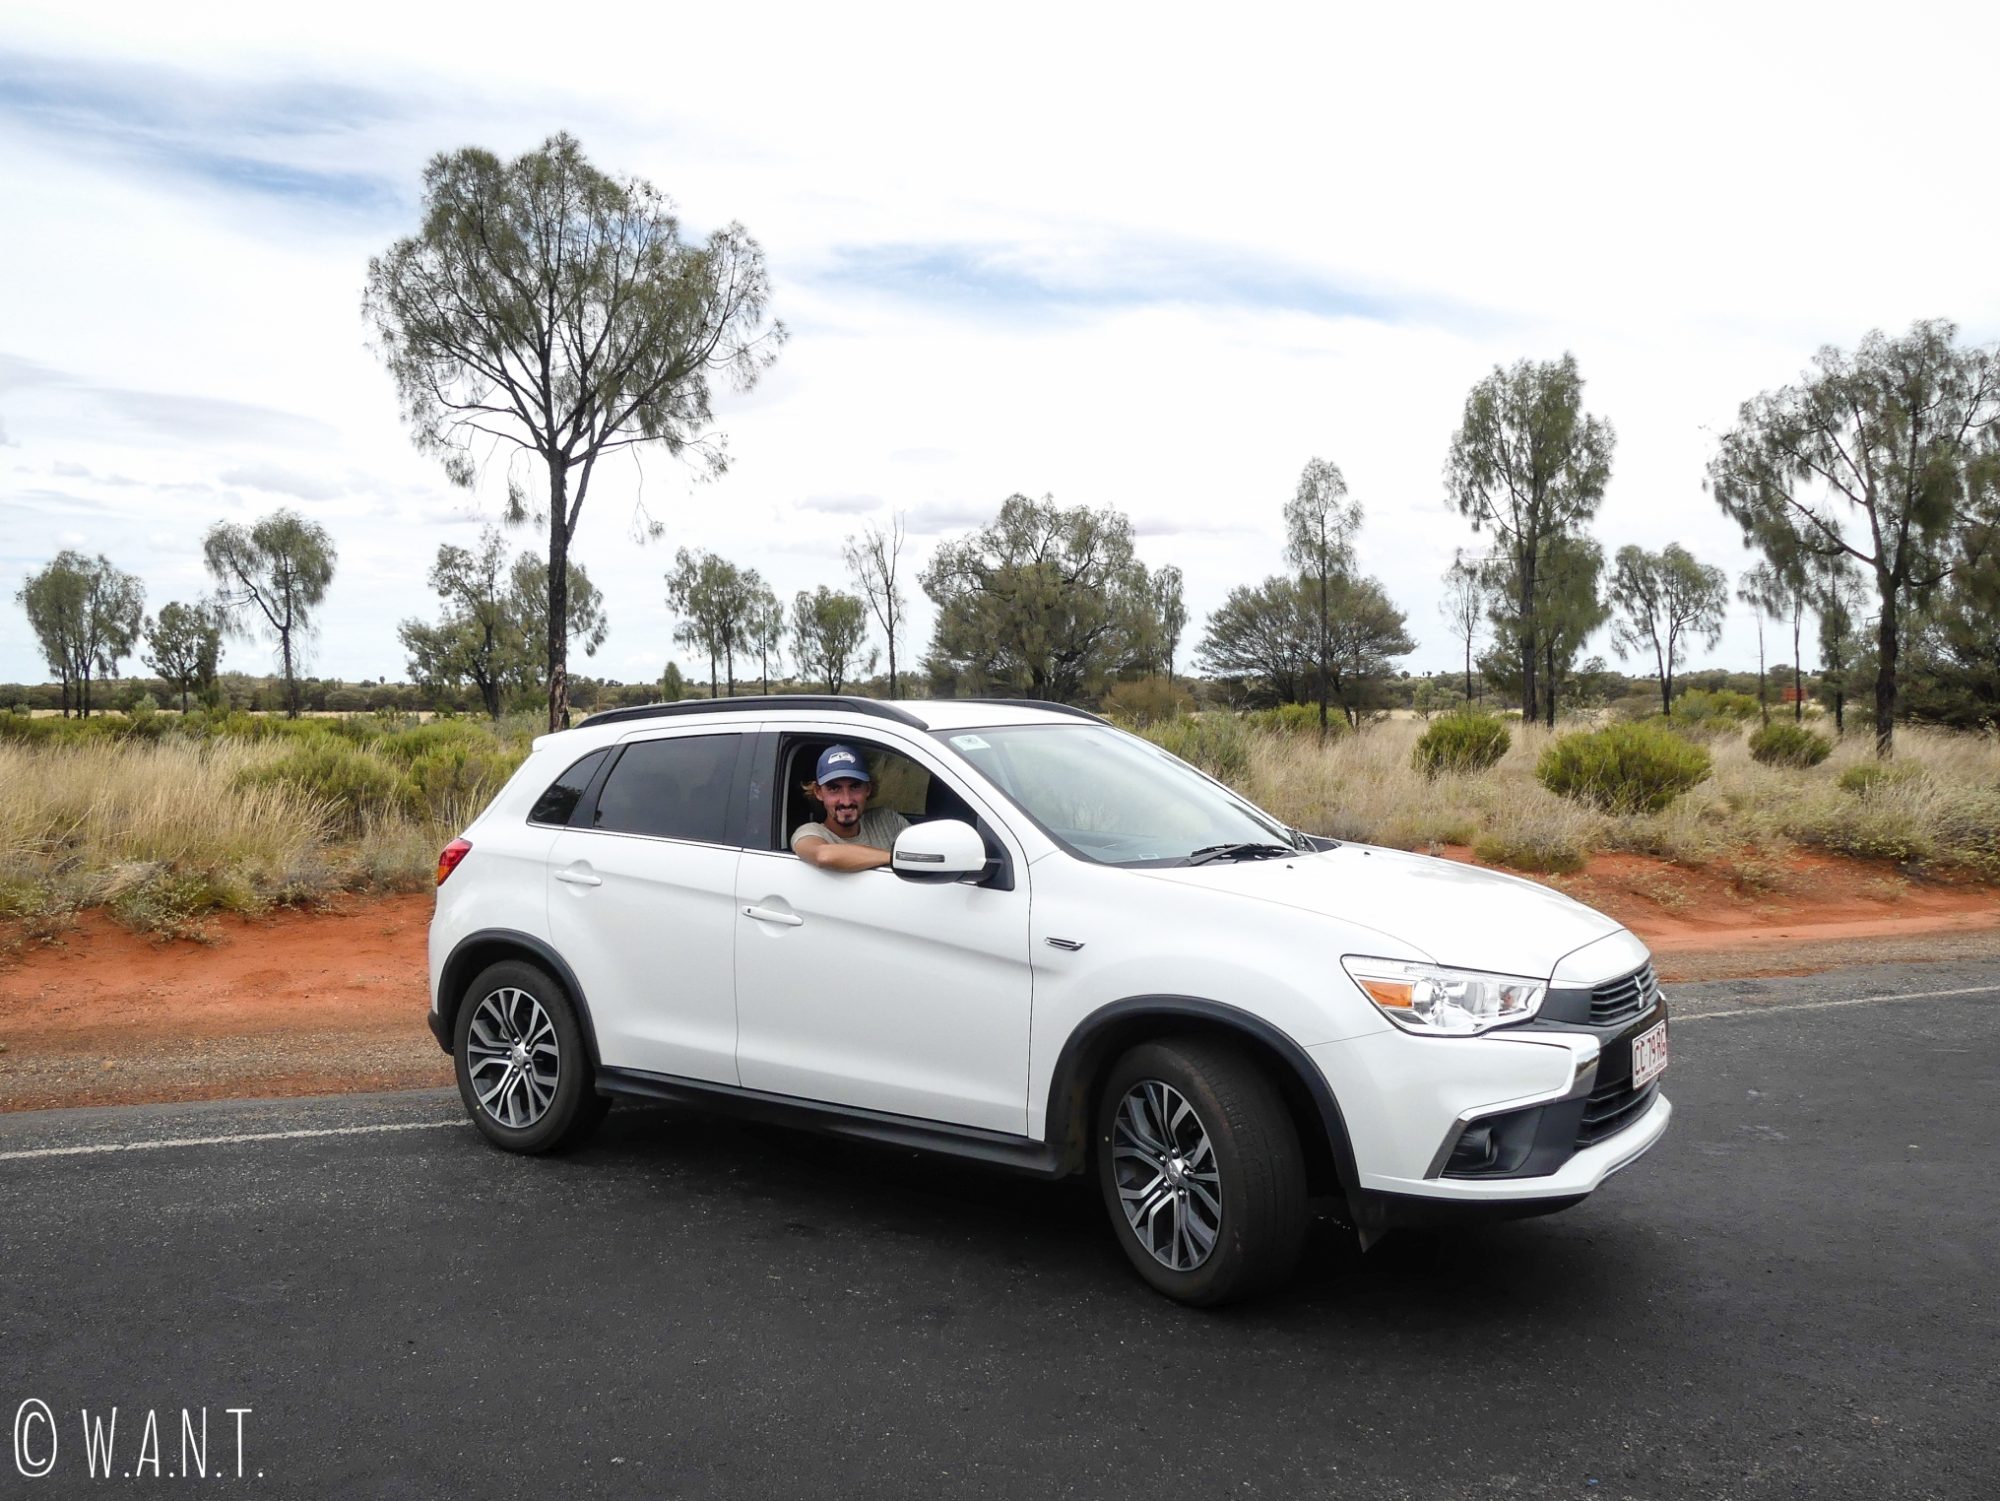 Notre voiture de location durant nore séjour au parc national Uluru-Kata Tjuta